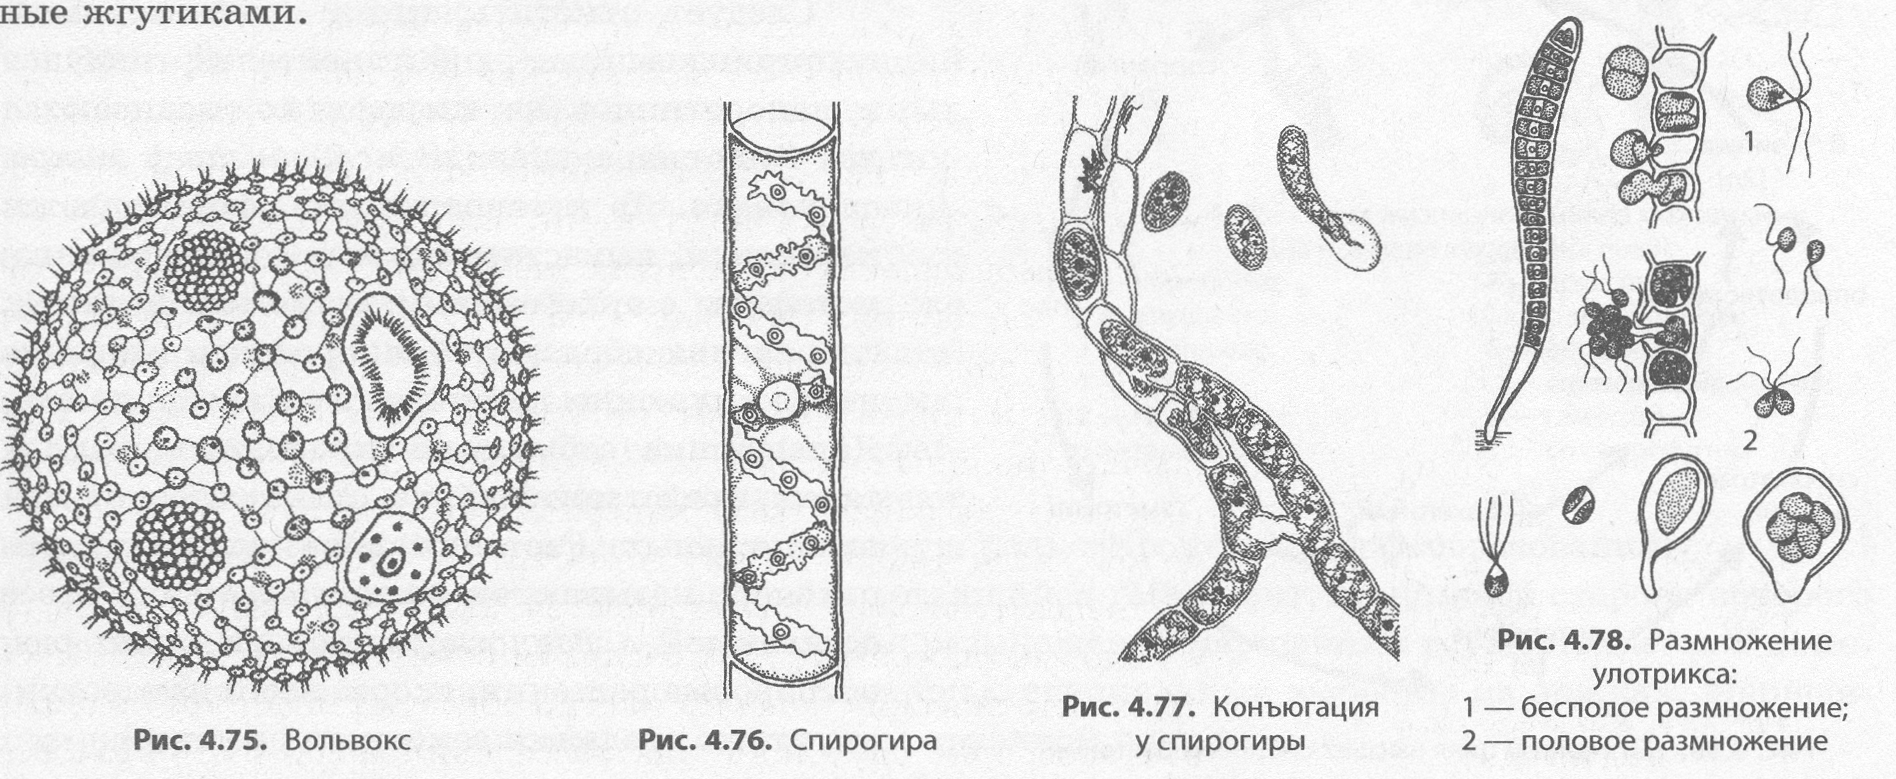 вольвокс многоклеточная водоросль